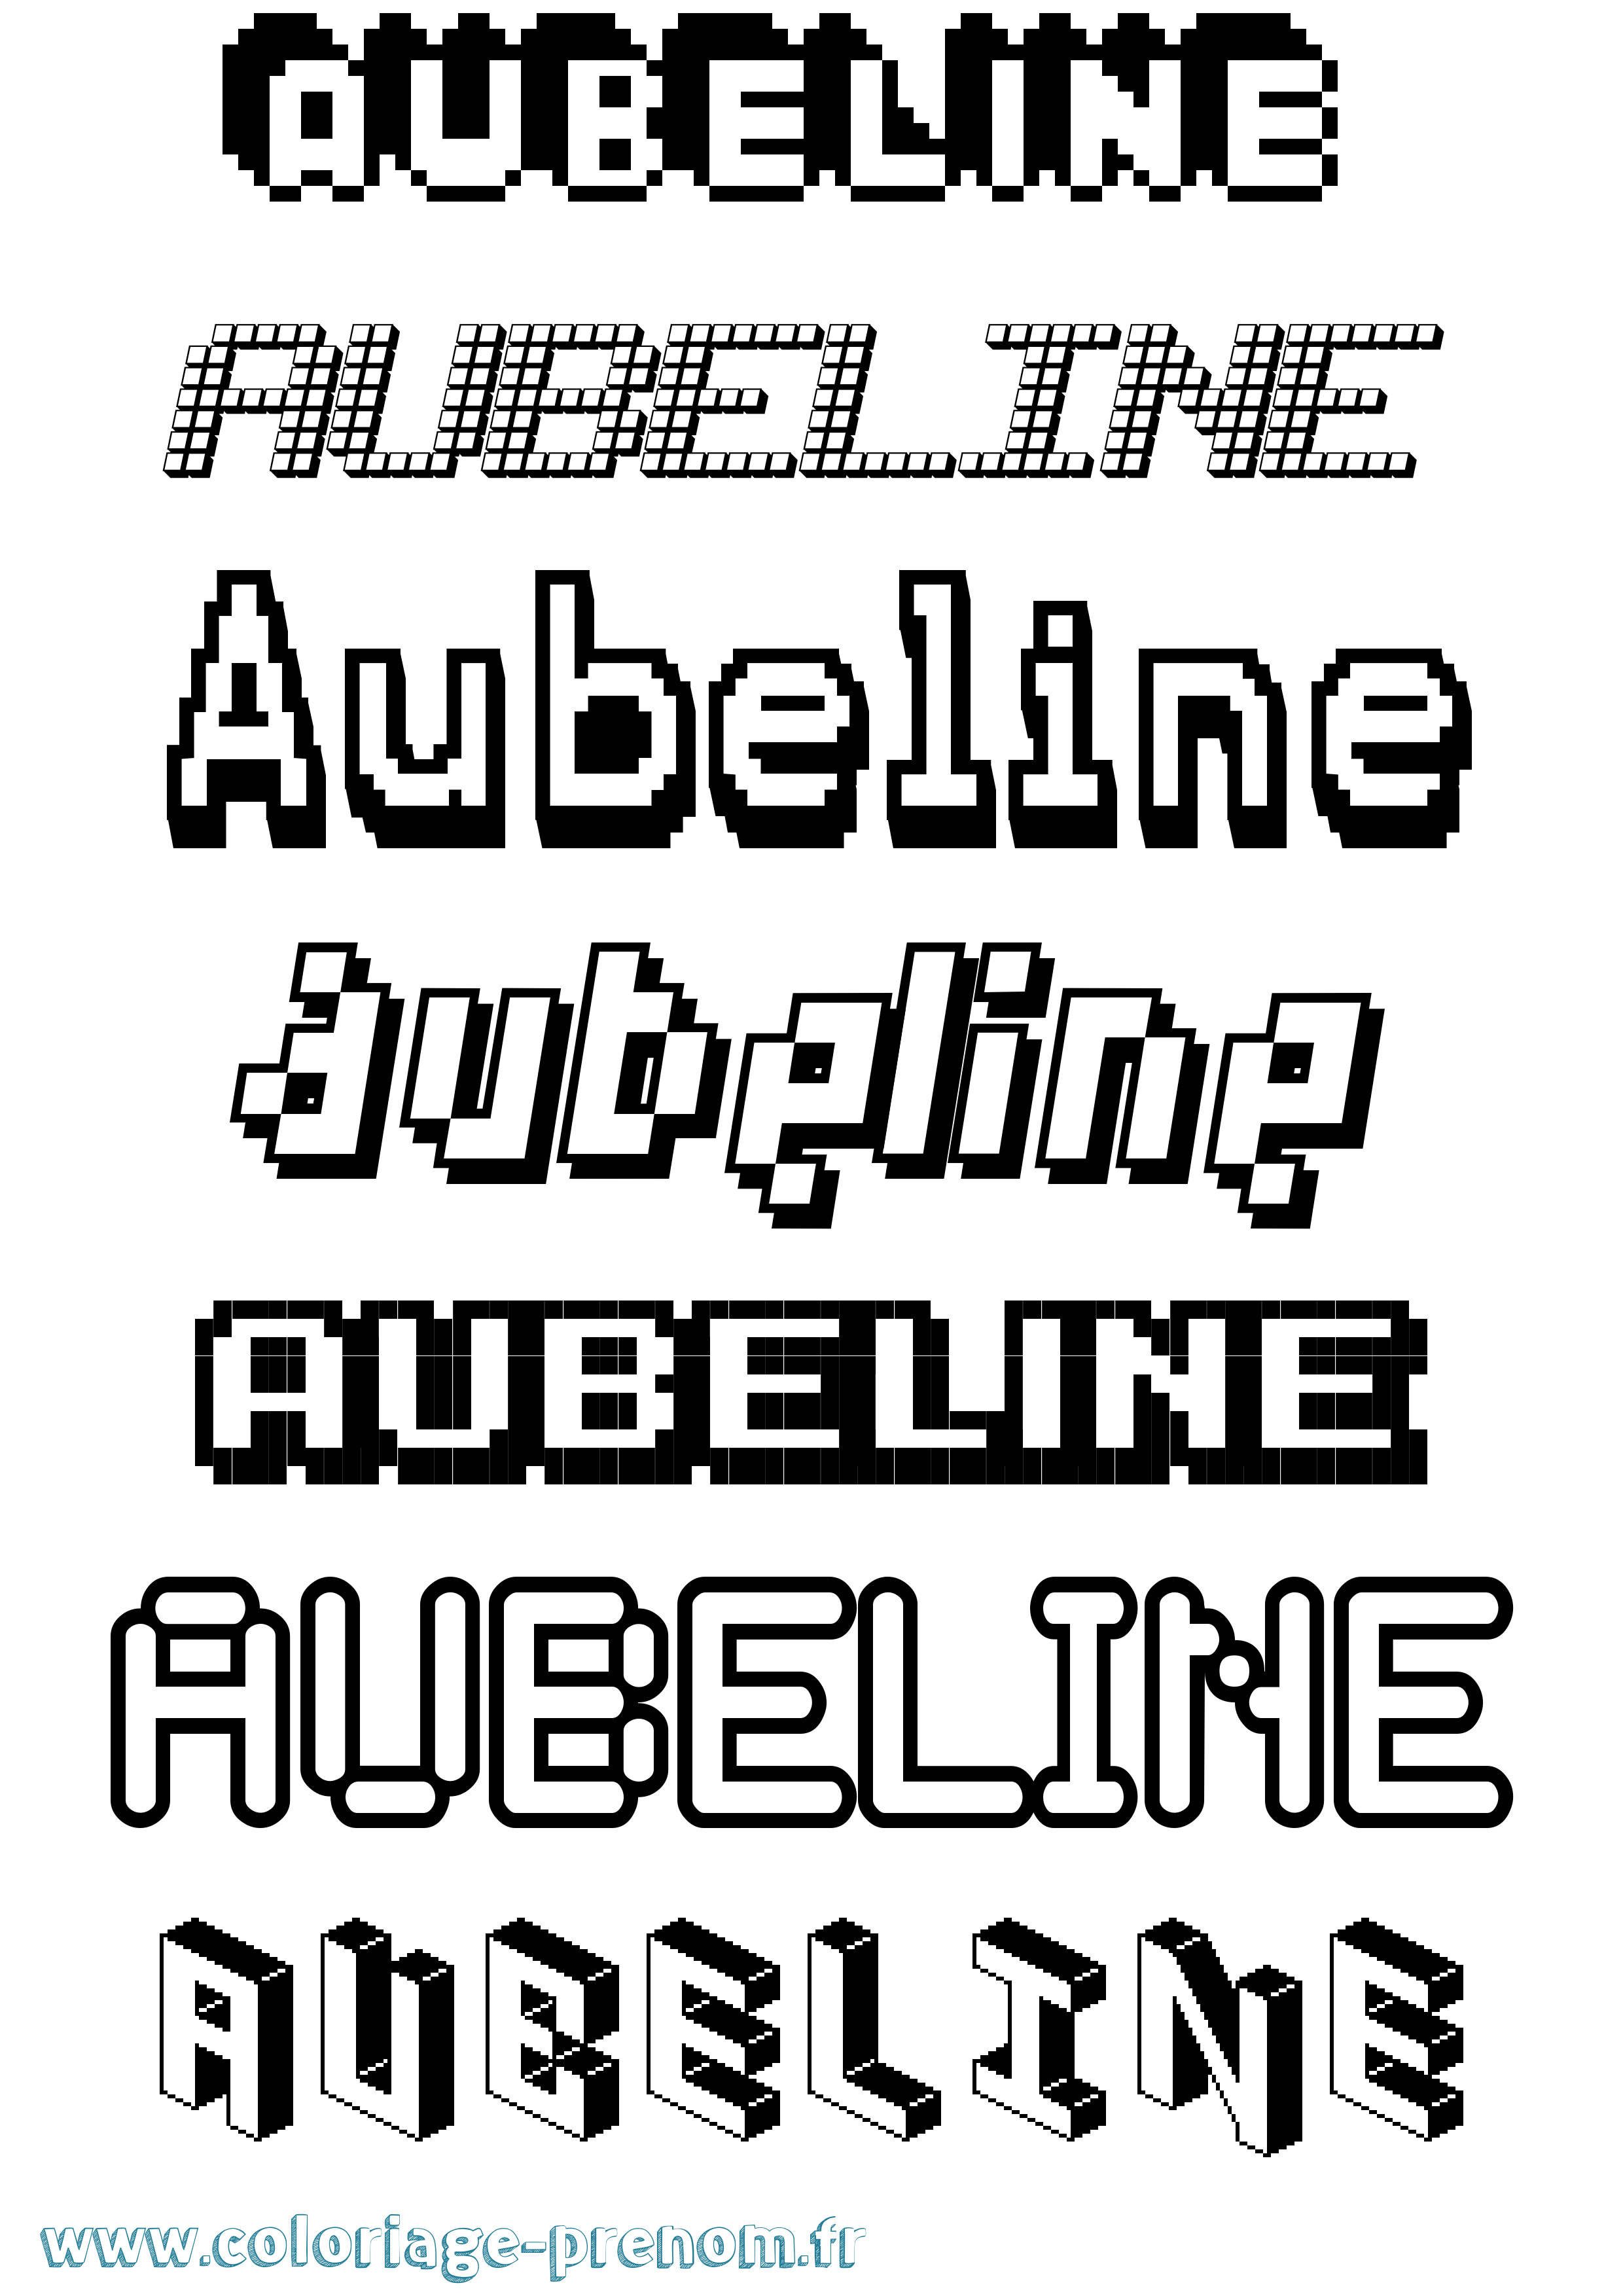 Coloriage prénom Aubeline Pixel